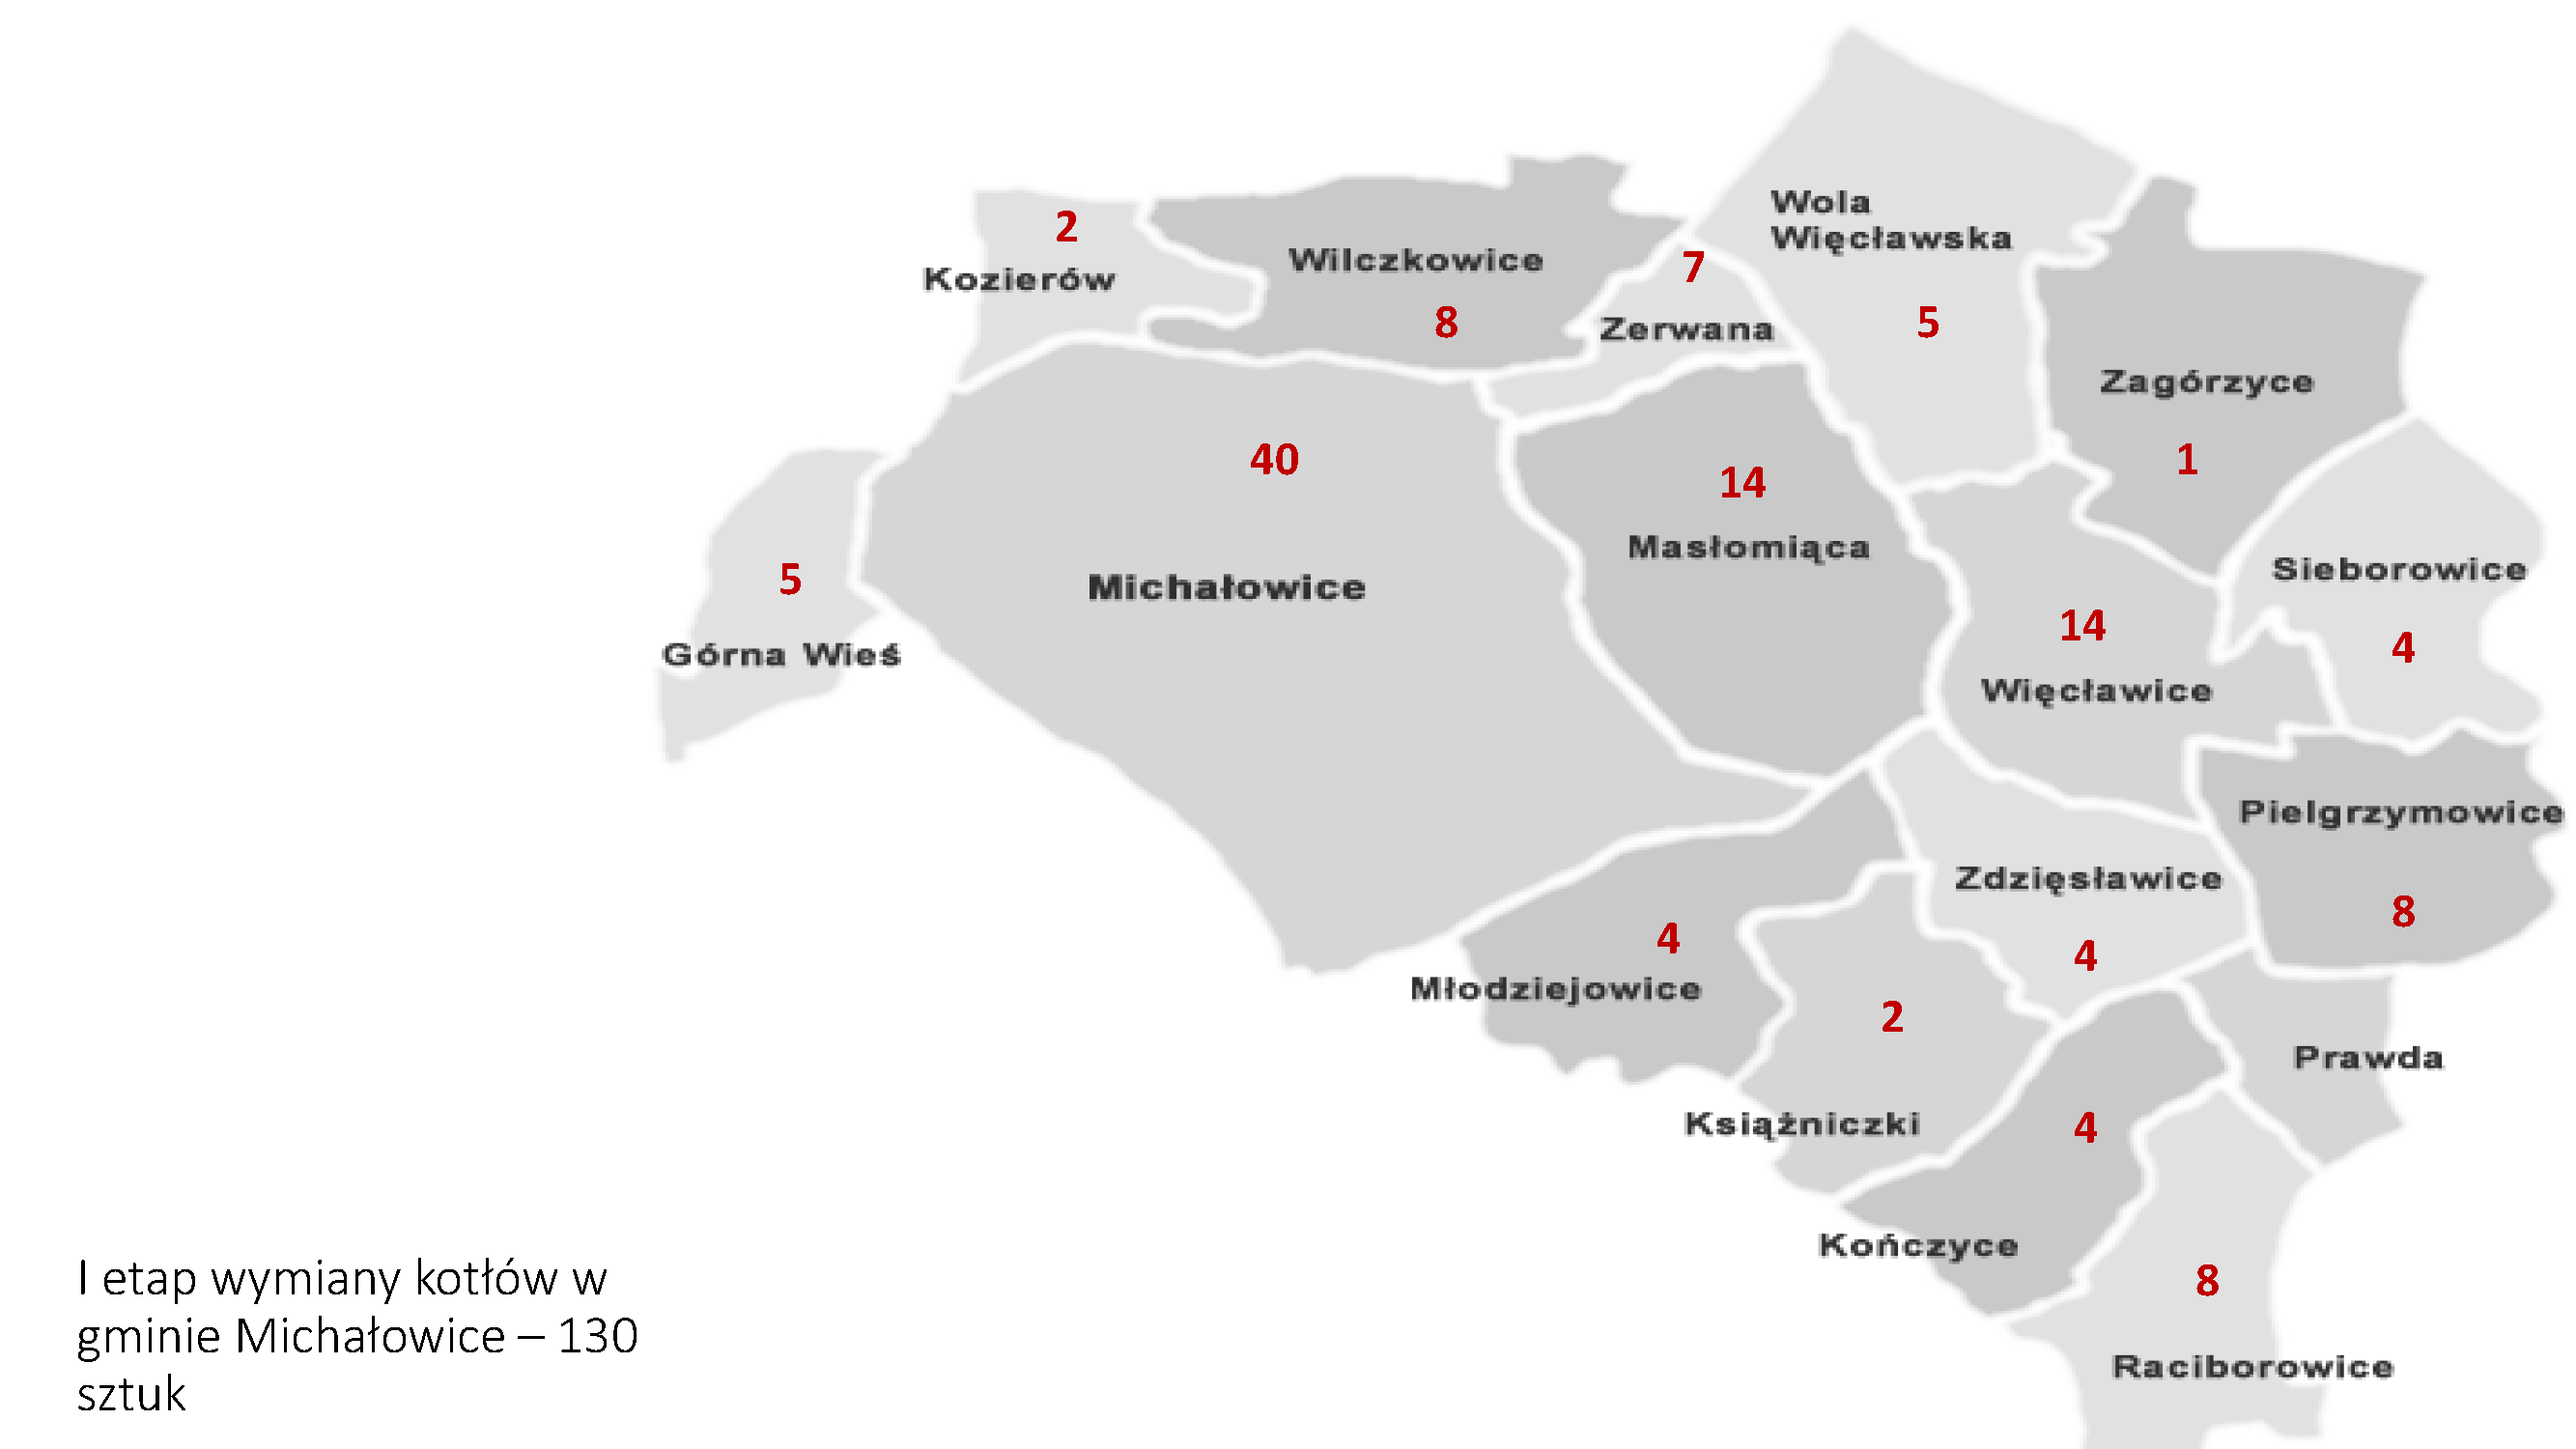 I etap wymiany kotłów w gminie Michałowice - 130 sztuk